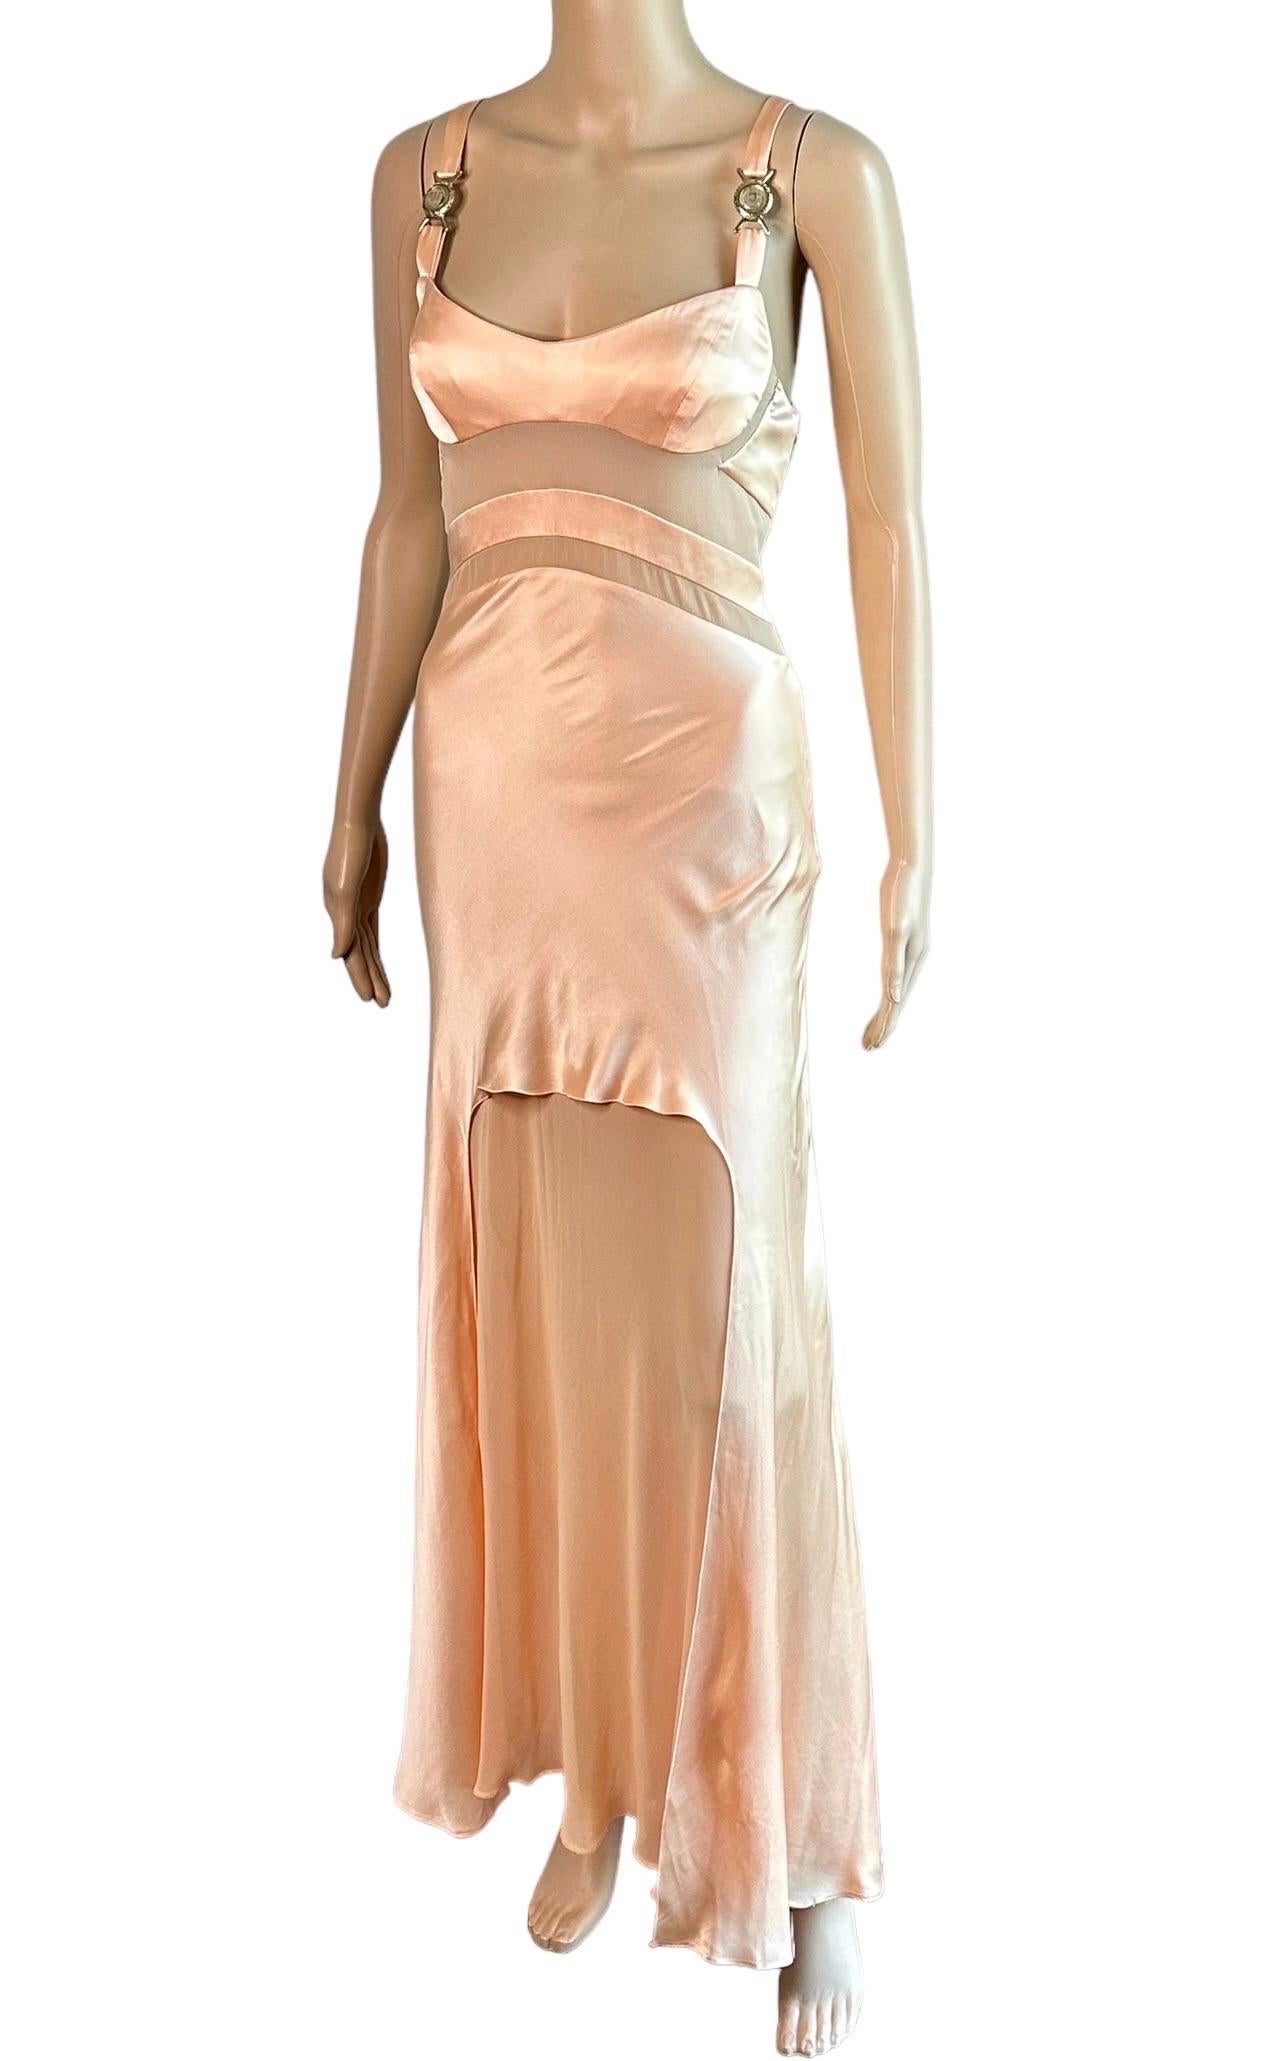 Versace S/S 2005 Laufsteg Durchsichtige Paneele Medusa Logo Seide Slip Abendkleid Kleid  9